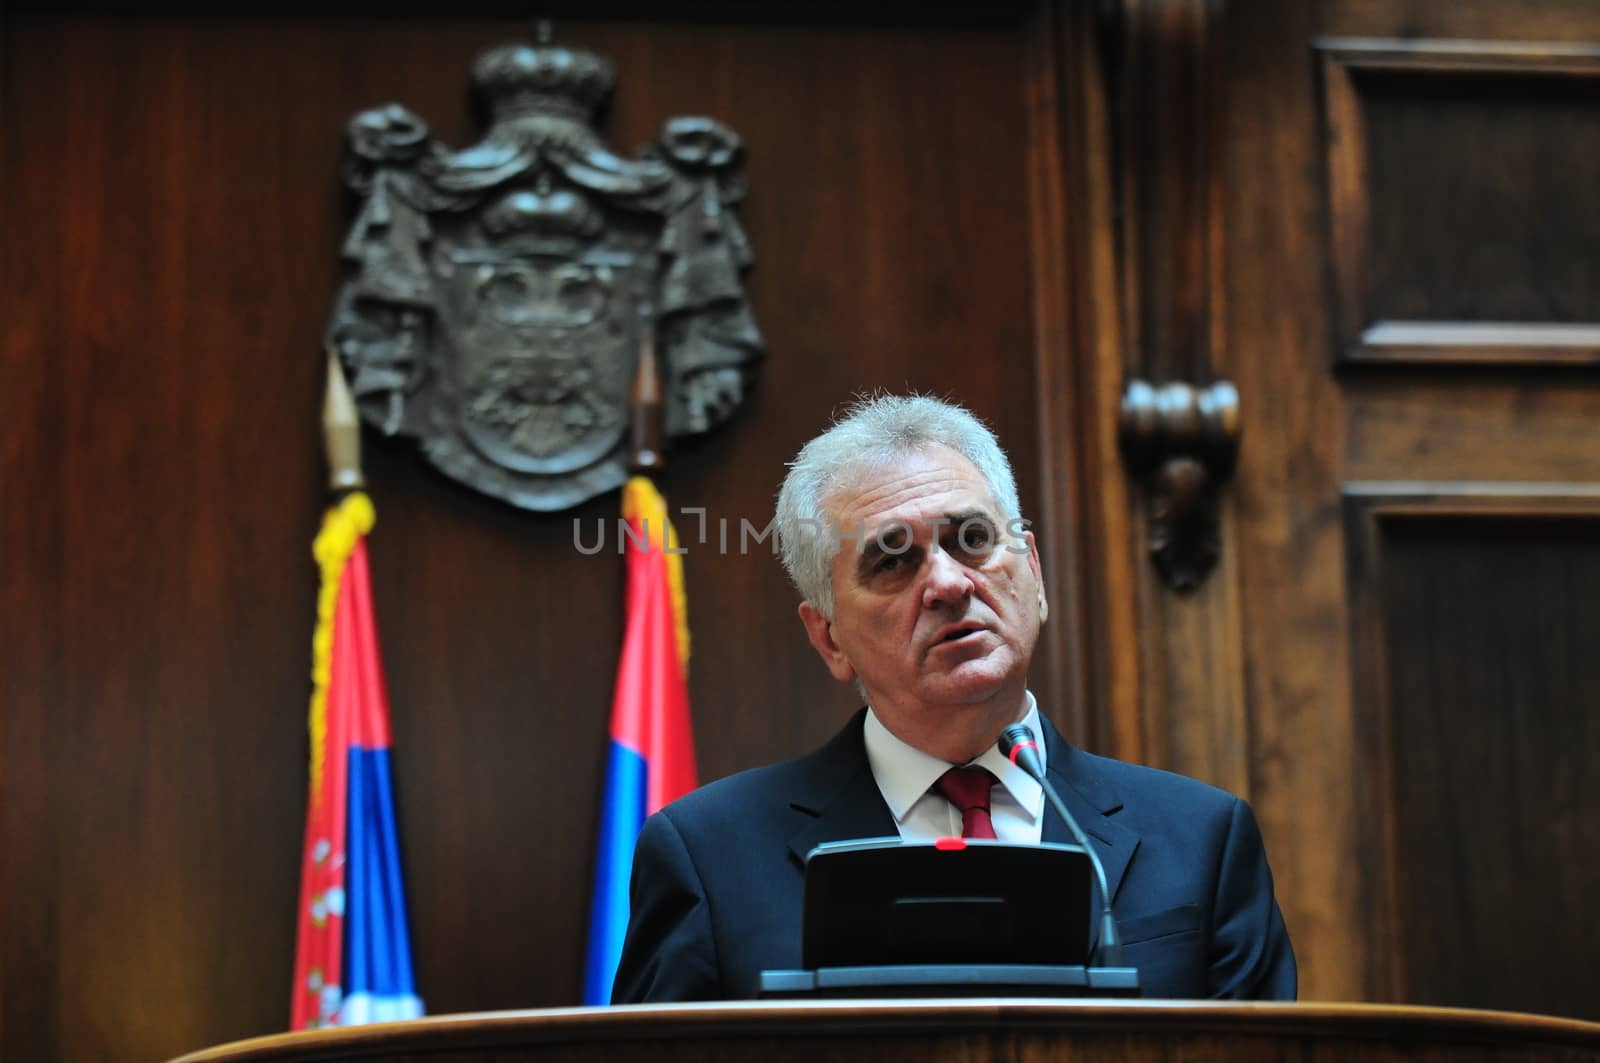 President of Serbia Tomislav Nikolich by krutenyuk